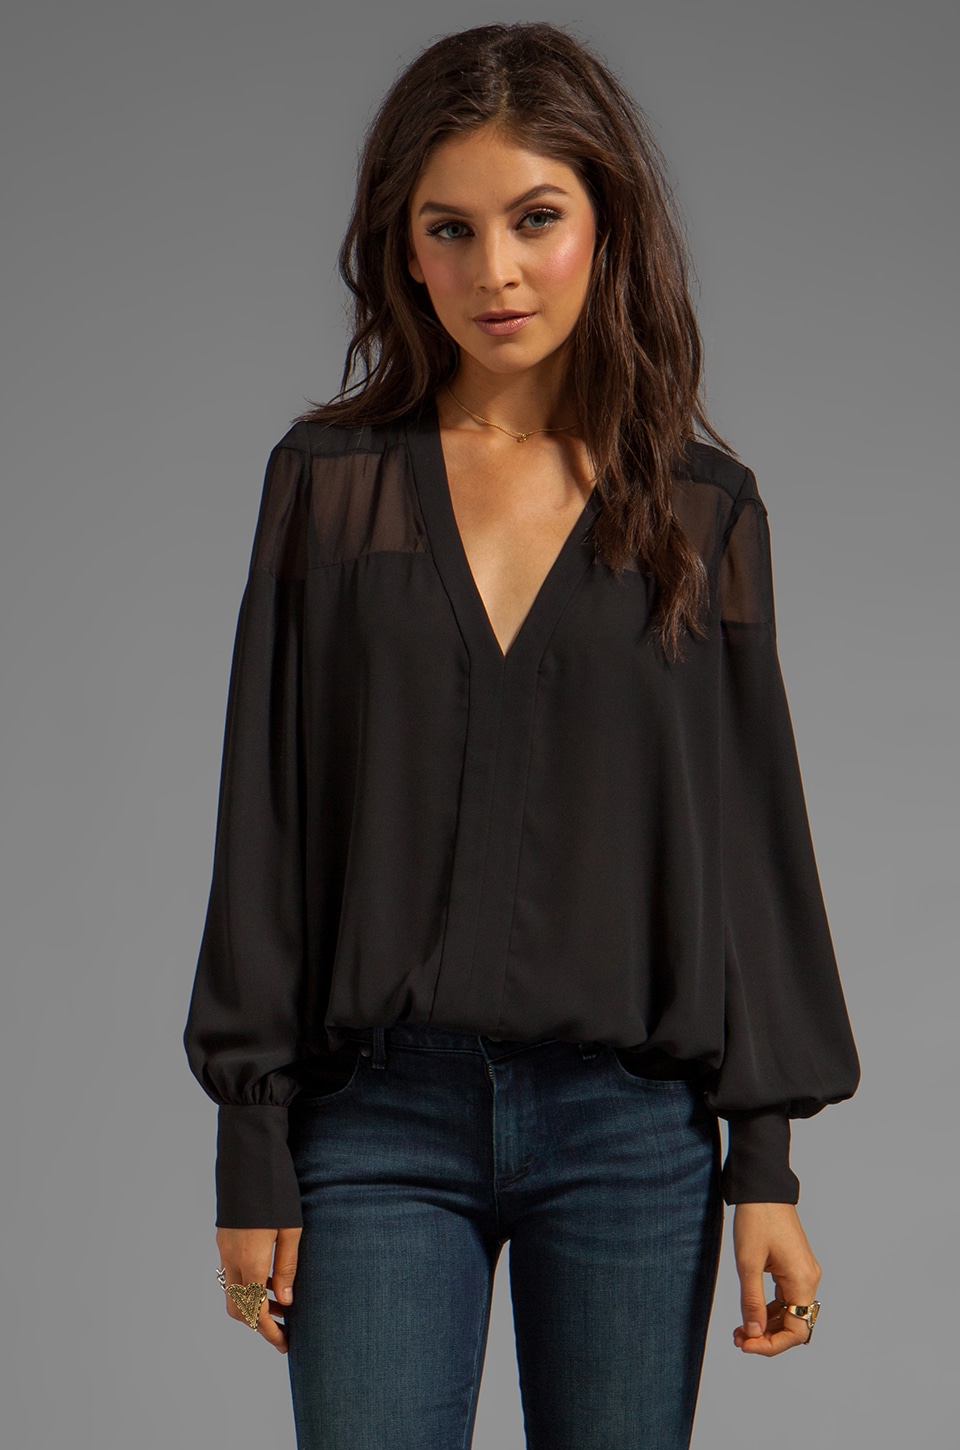 Похожая кофта. Блуза с прозрачными рукавами. Черная блуза. Блуза черная с прозрачными рукавами. Темная блузка.